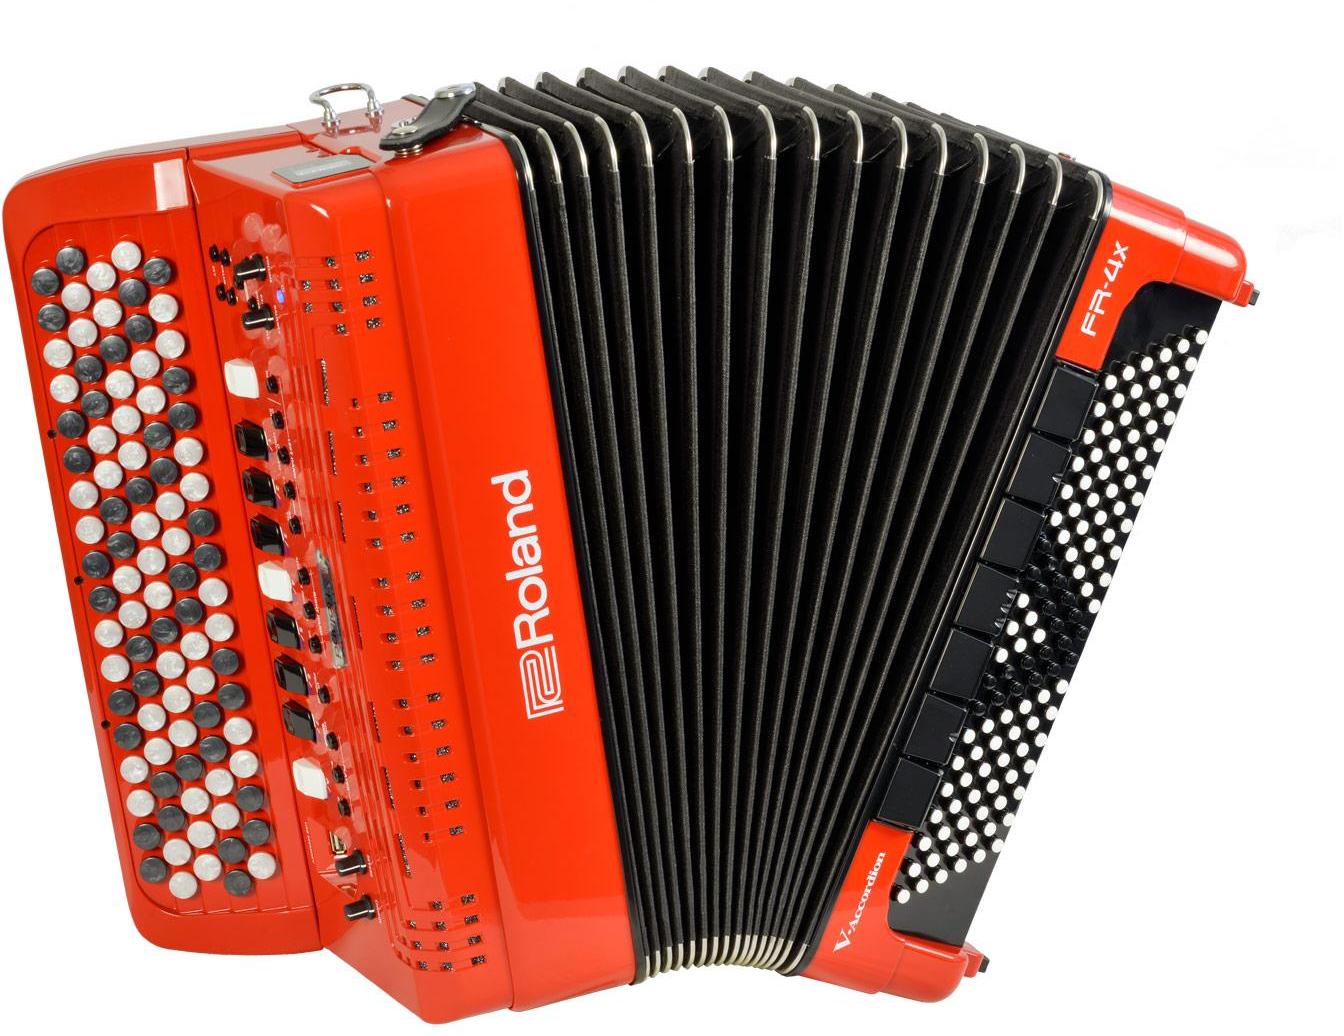 Digital accordion Roland FR-4XB-RD